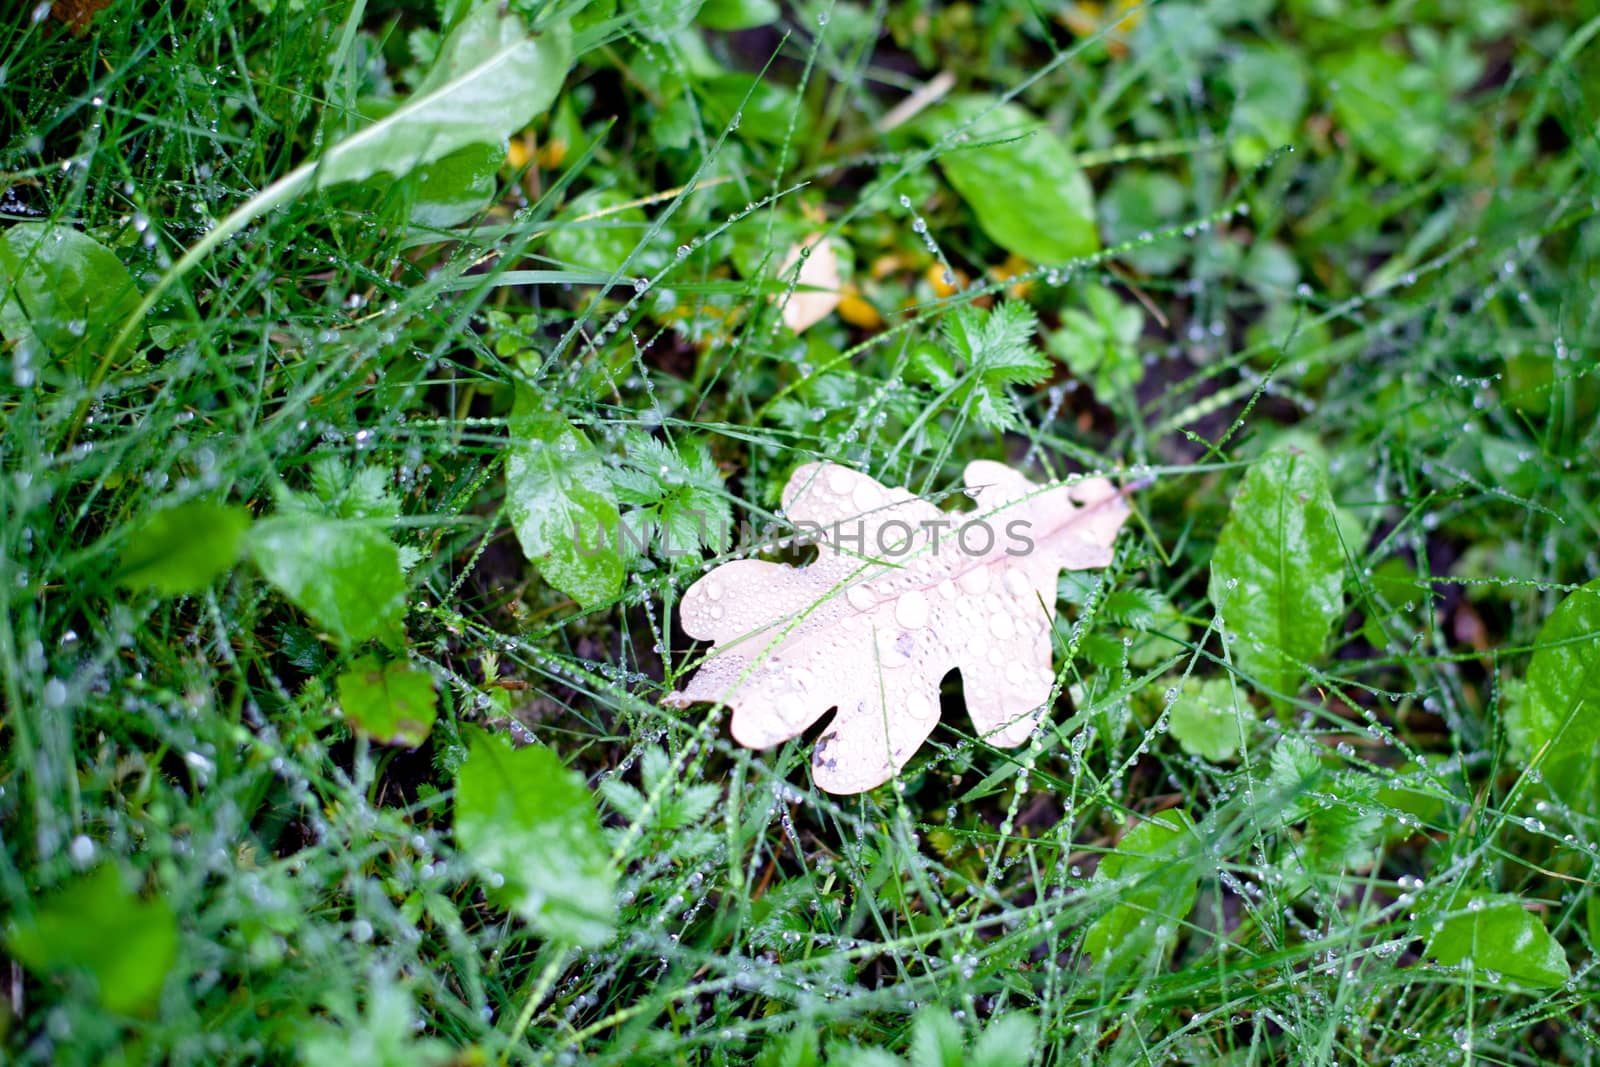 Brown oak leaf by foaloce